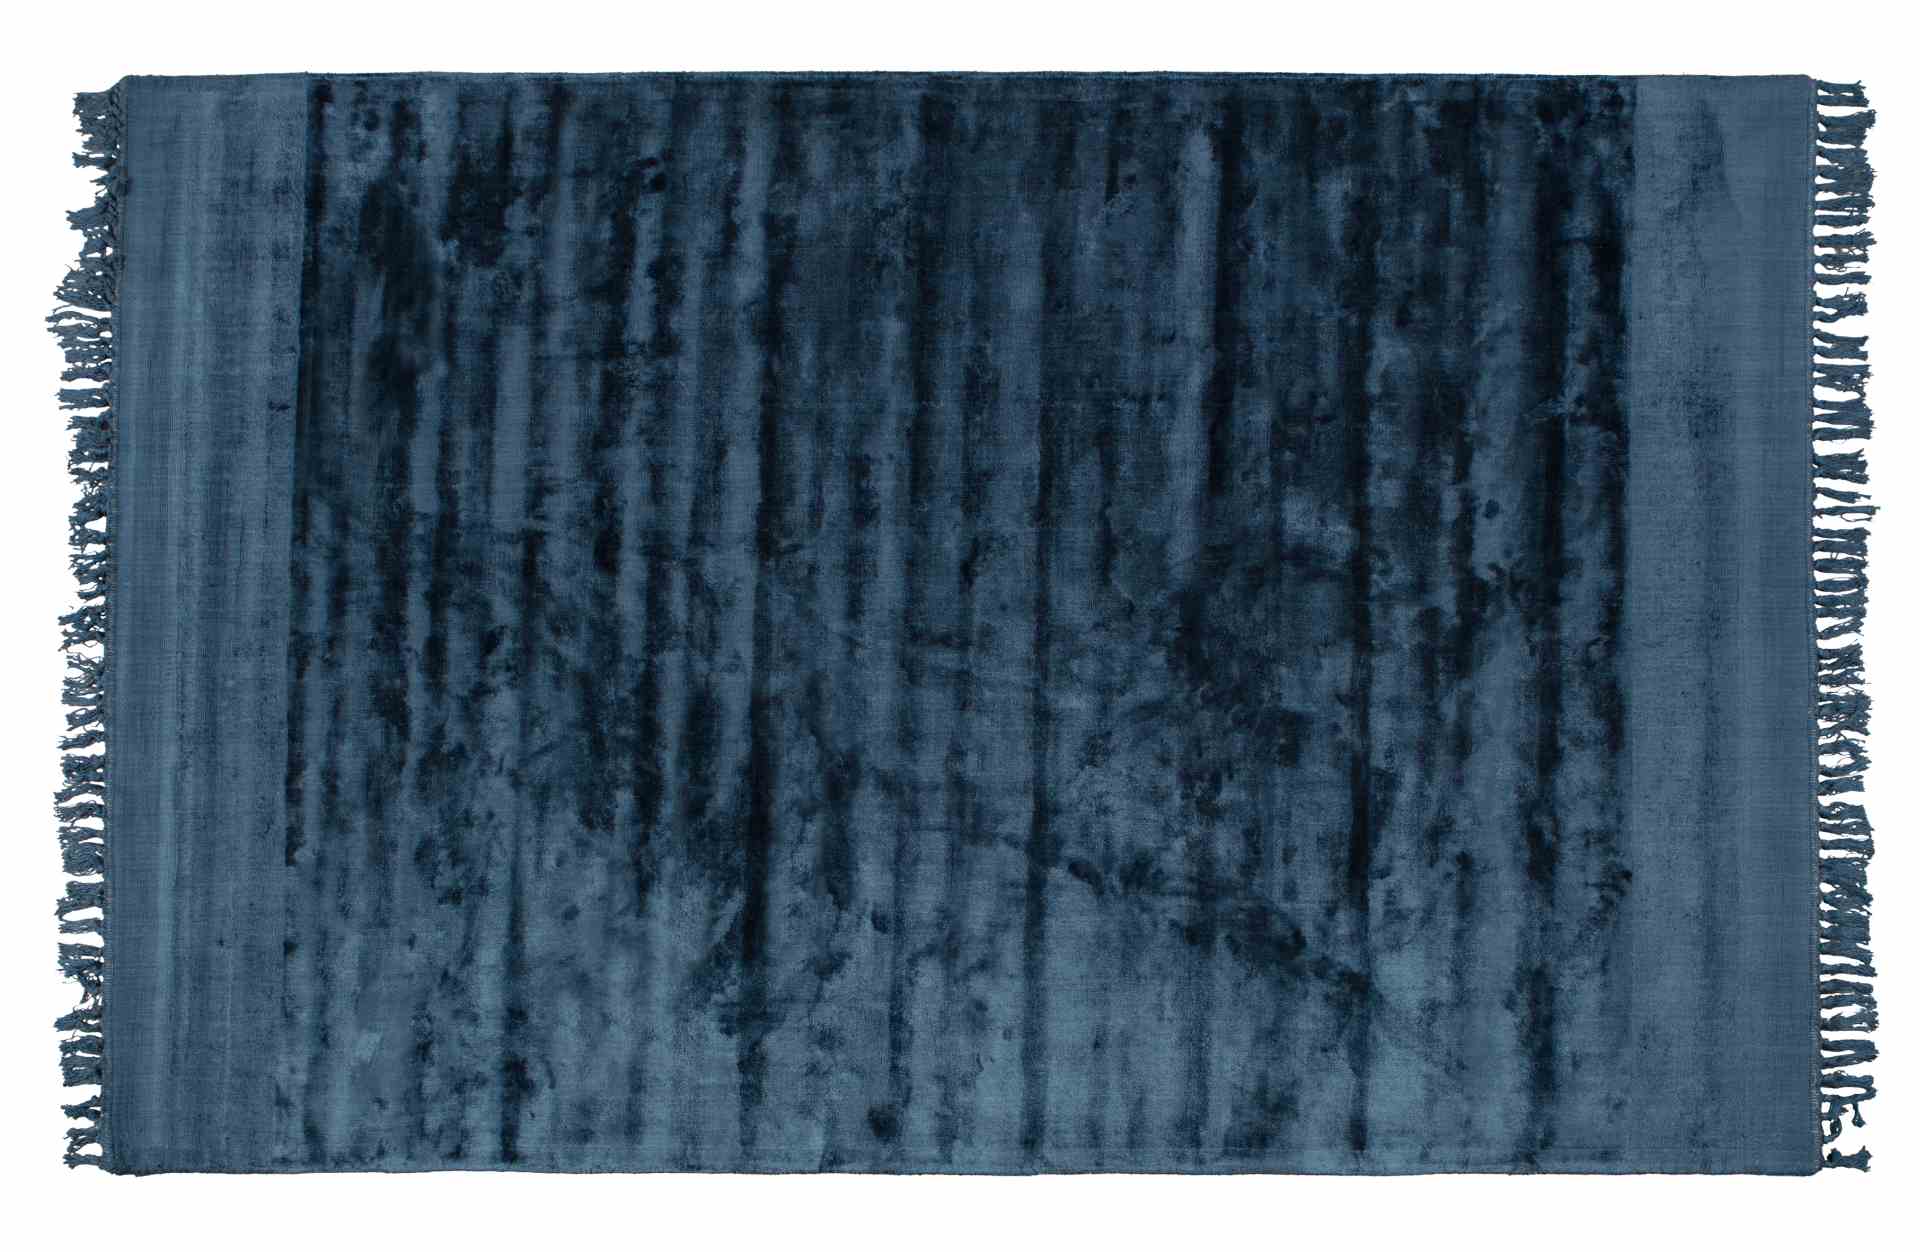 Der Teppich Sweep überzeugt mit seinem modernen Design. Gefertigt wurde er aus einem Kombinationsgewebe aus Viskose und Baumwolle, welche einen blauen Farbton besitzt. Der Teppich besitzt eine Größe von 200x300 cm.